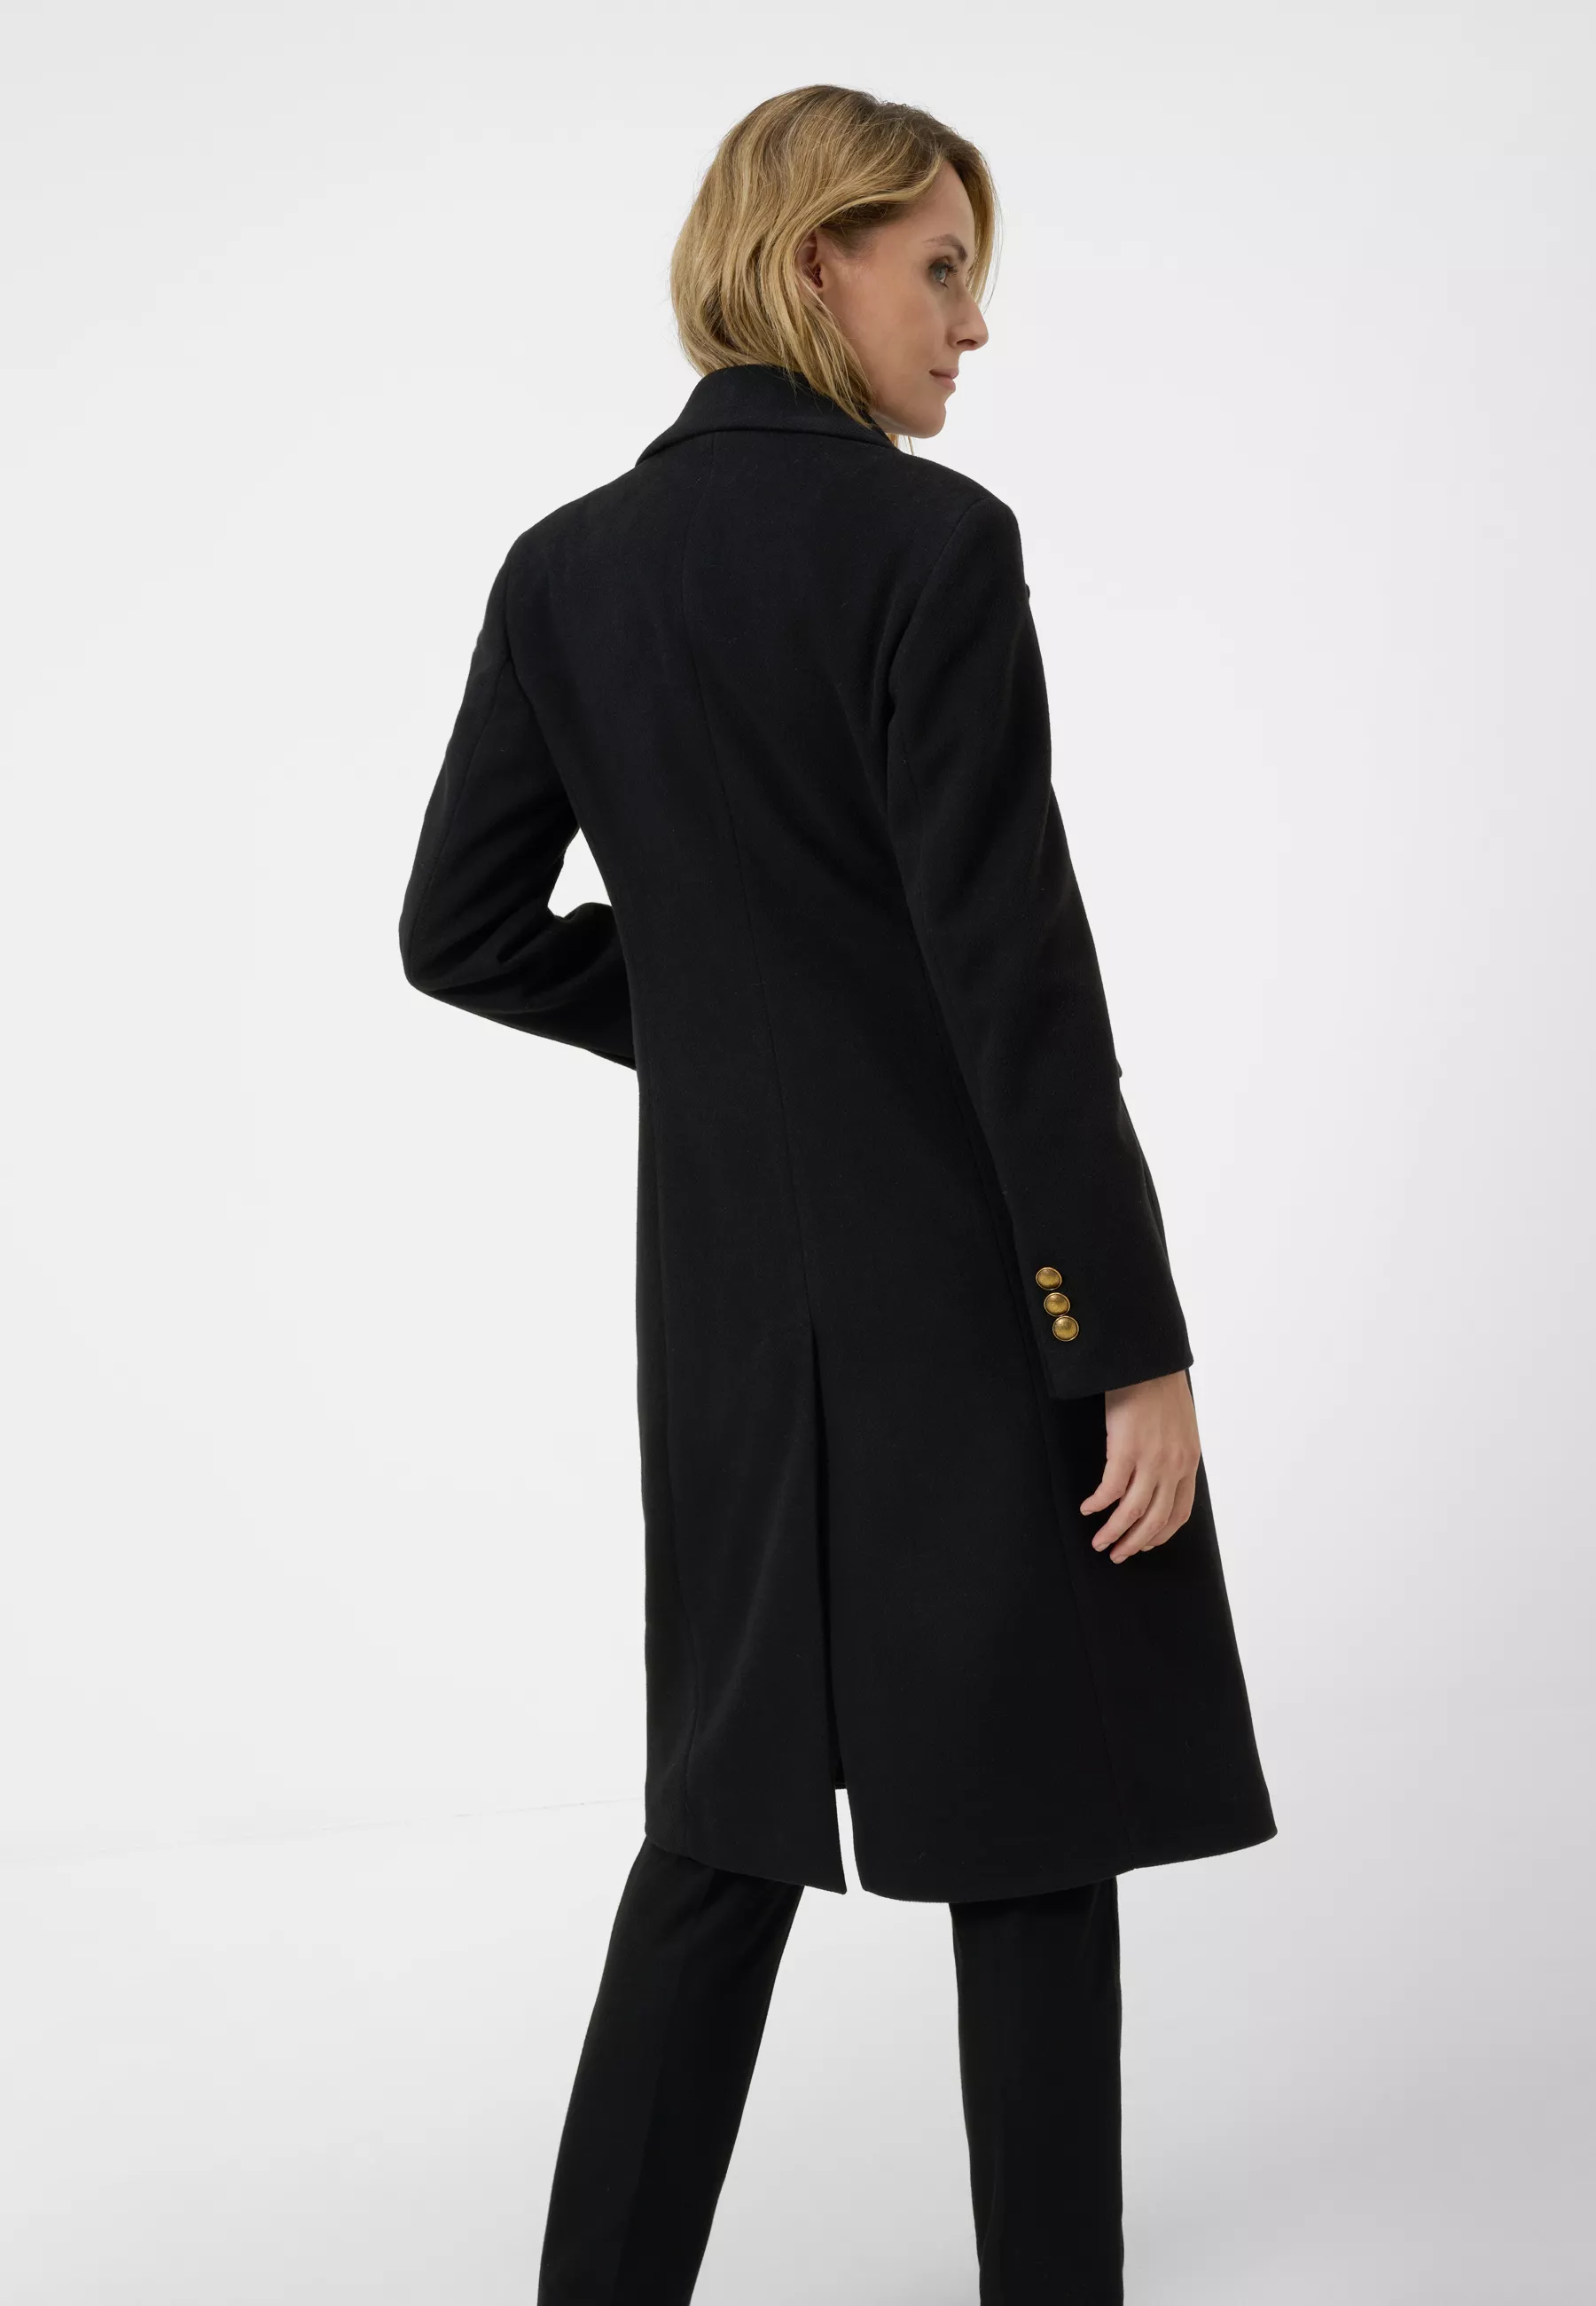 Damen Textil Mantel Giulia in Schwarz von Ricano, Rückansicht am Model